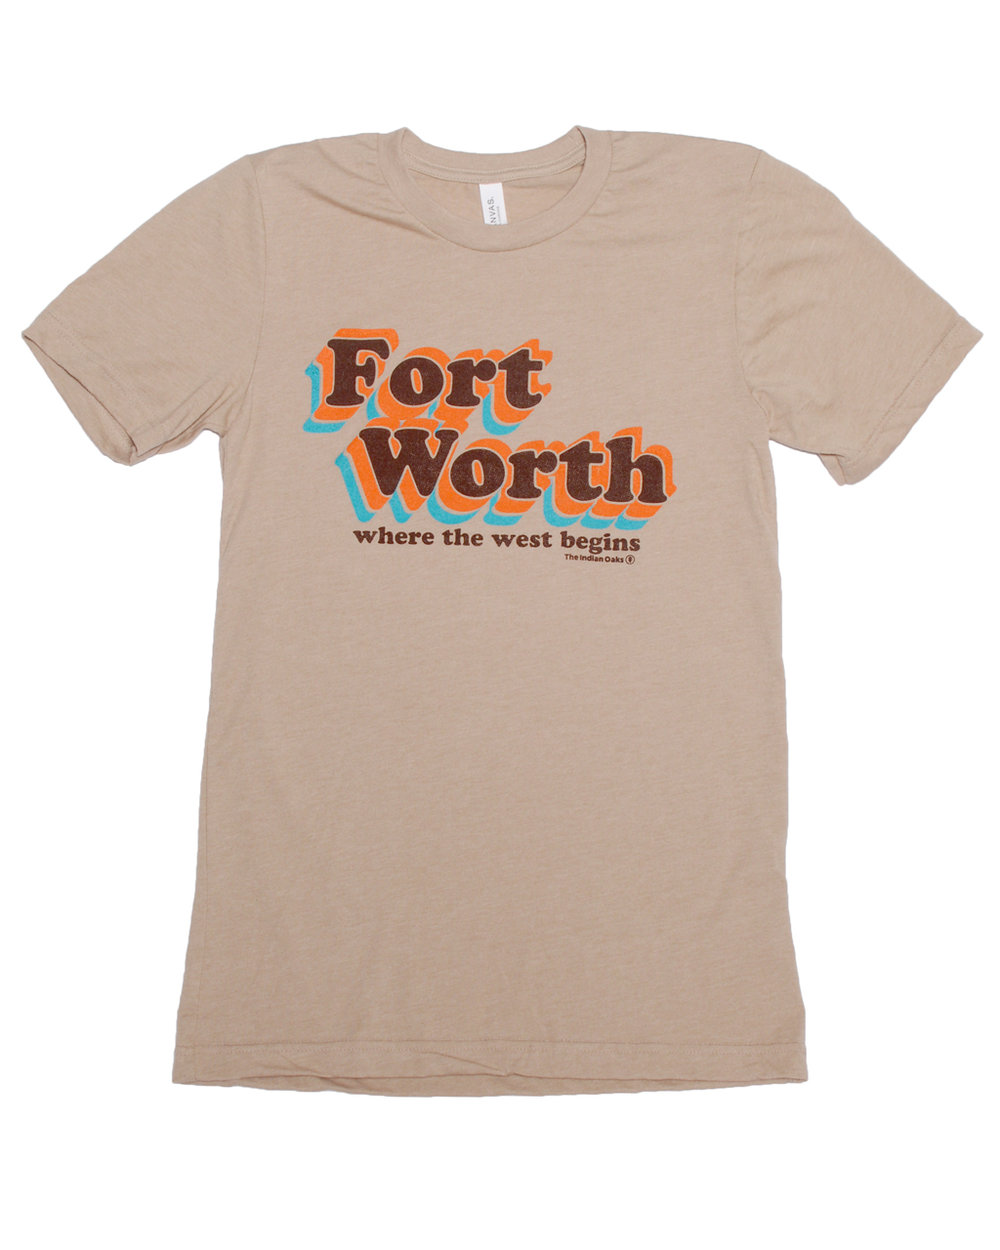 Fort Worth Vintage Shirt u2014 The Indian Oaks